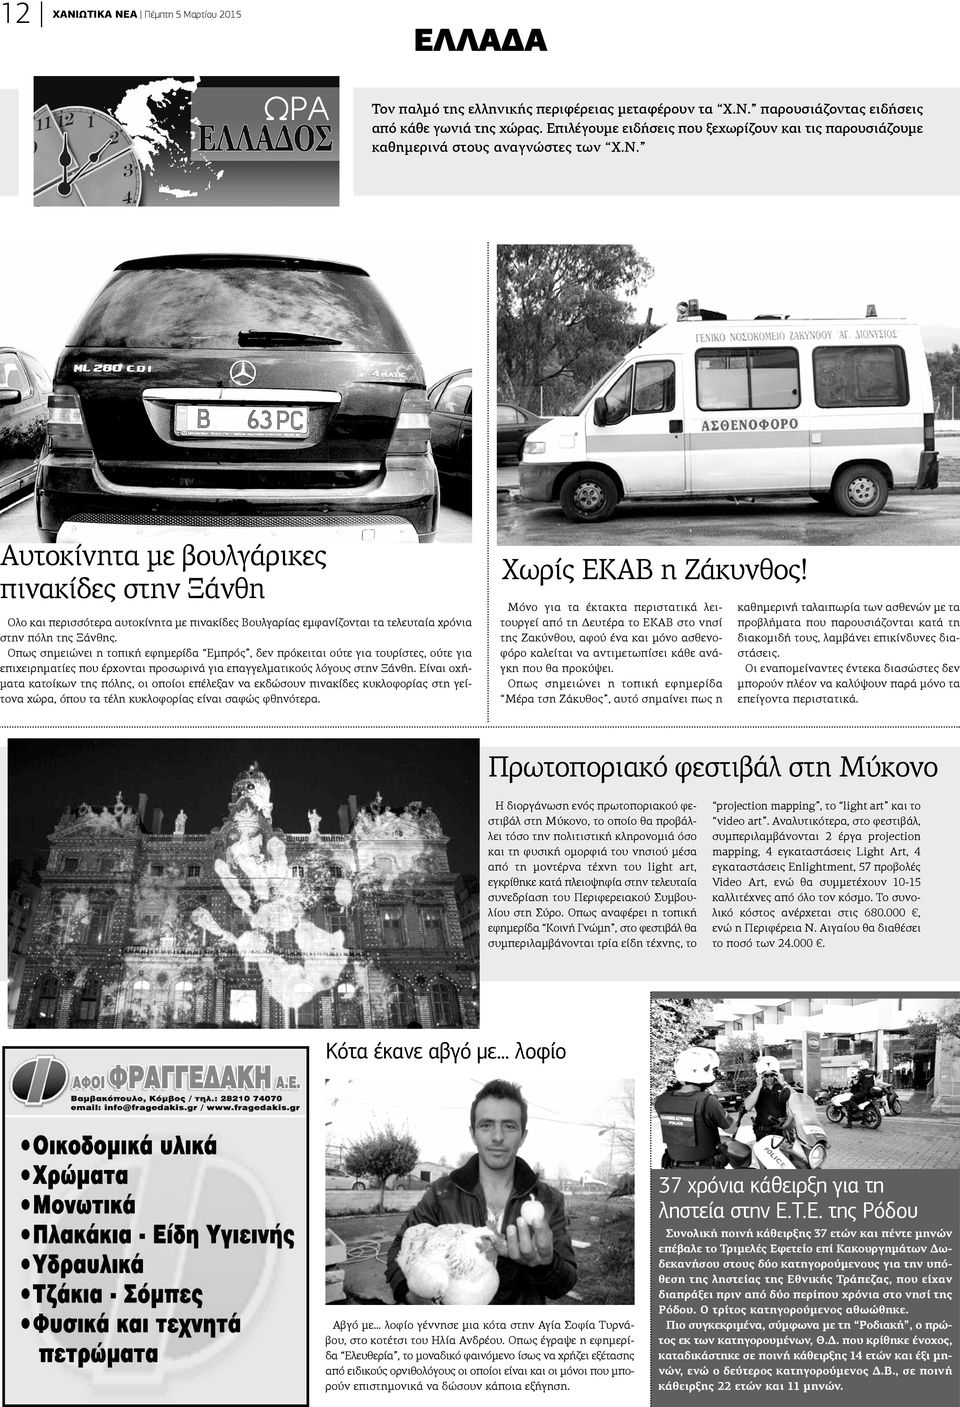 Αυτοκίνητα με βουλγάρικες πινακίδες στην Ξάνθη Ολο και περισσότερα αυτοκίνητα με πινακίδες Βουλγαρίας εμφανίζονται τα τελευταία χρόνια στην πόλη της Ξάνθης.